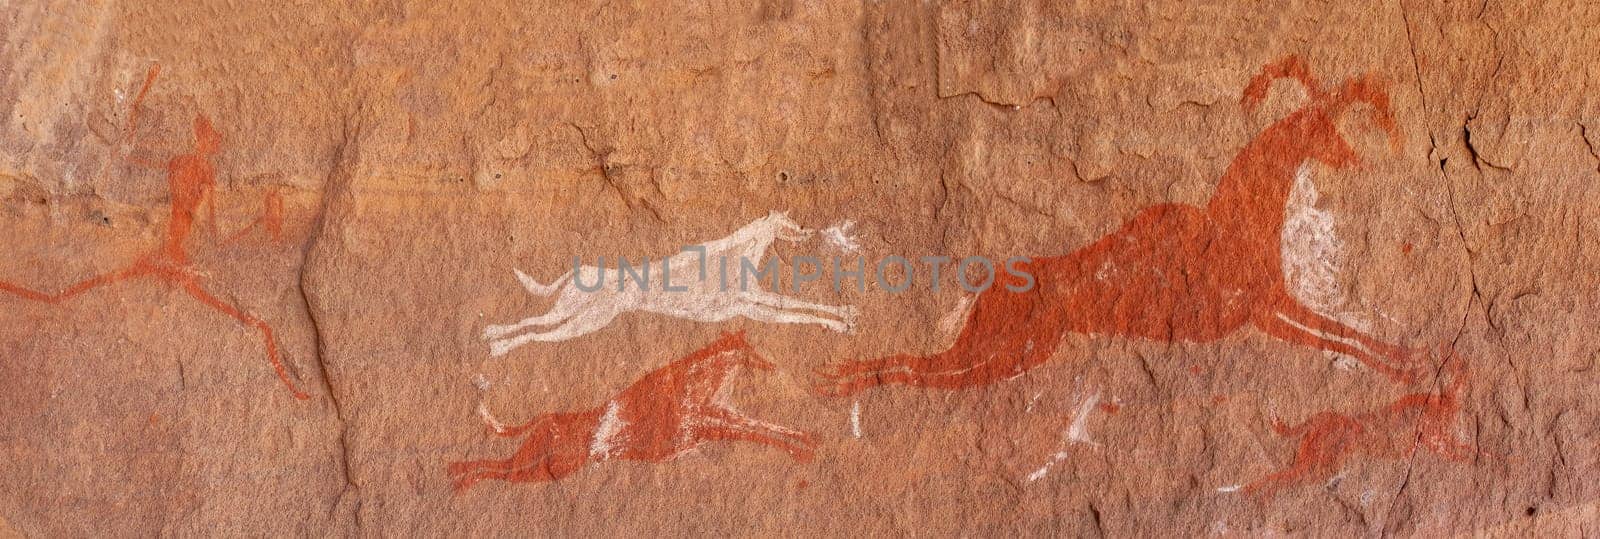 Prehistoric Petroglyphs - Rock Art - Akakus (Acacus) Mountains, Sahara, Libya